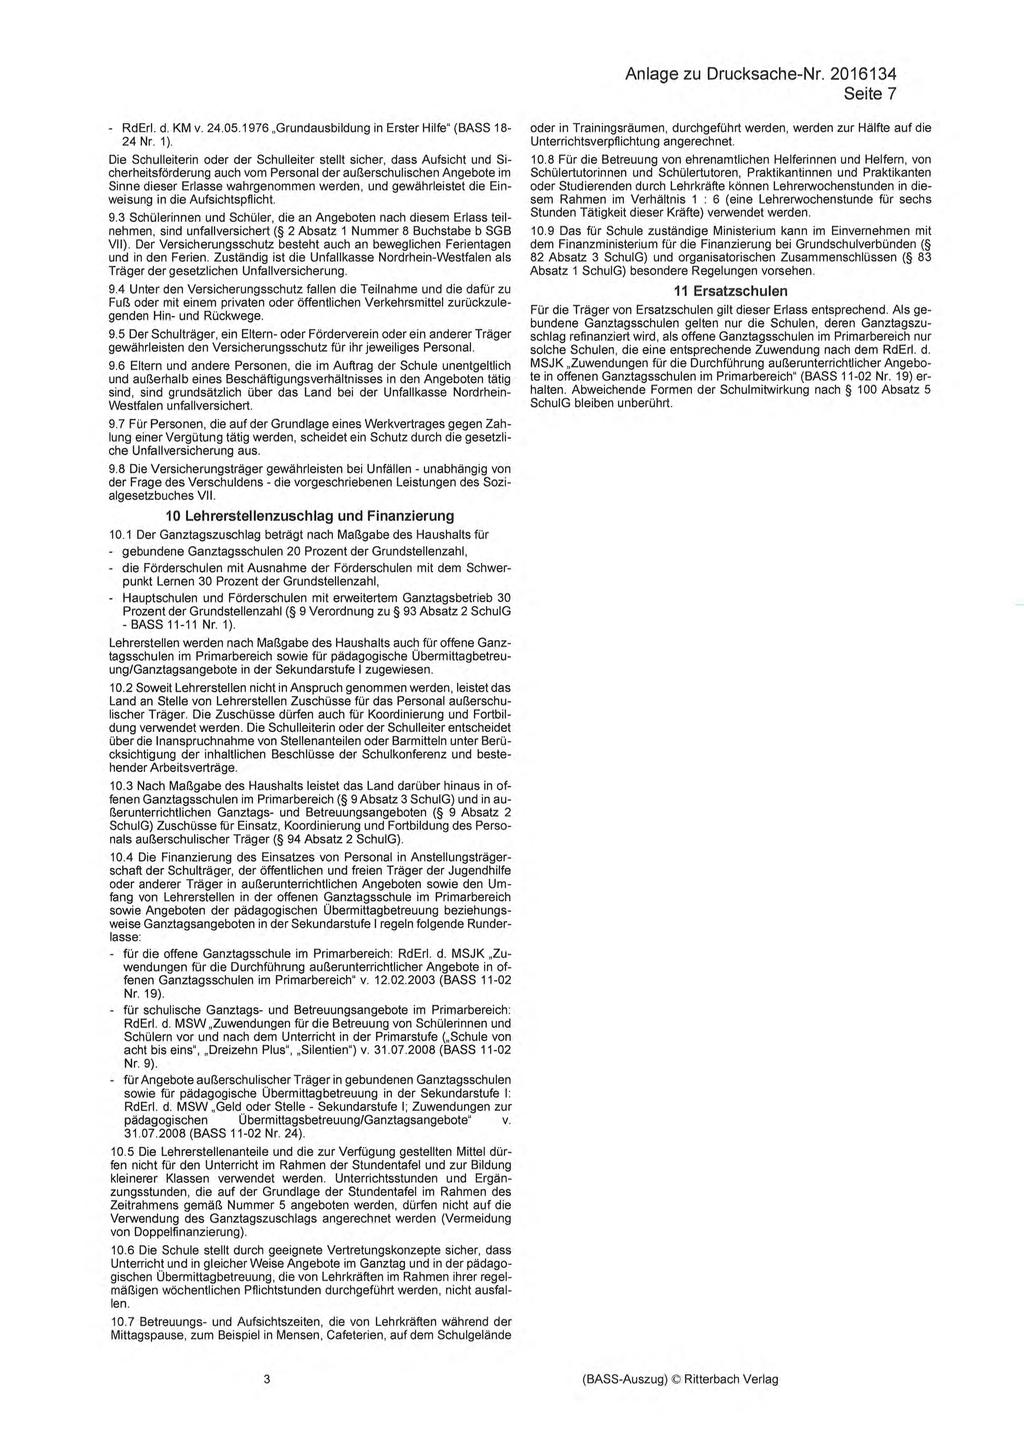 Anlage zu Drucksache-Nr. 2016134 Seite 7 - RdErl. d. KM v.24.05.1976 Grundausbildung in Erster Hilfe" (BASS 18-24 Nr. 1).